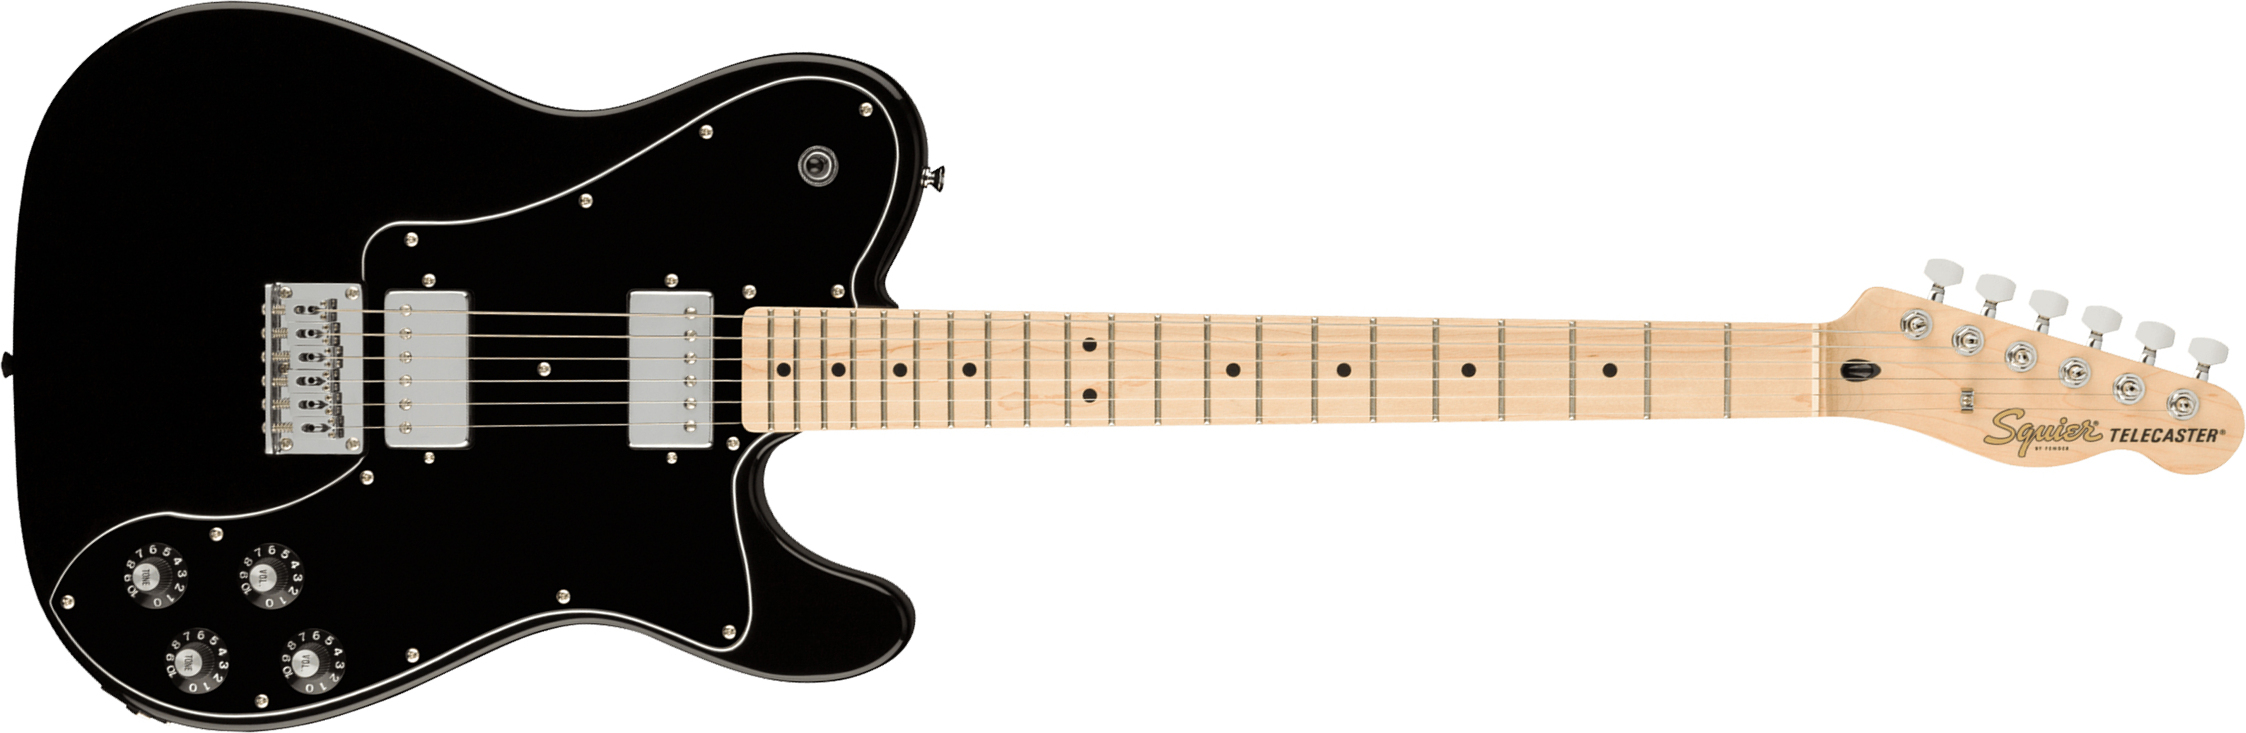 Squier Tele Affinity Deluxe 2021 Hh Ht Mn - Black - Televorm elektrische gitaar - Main picture